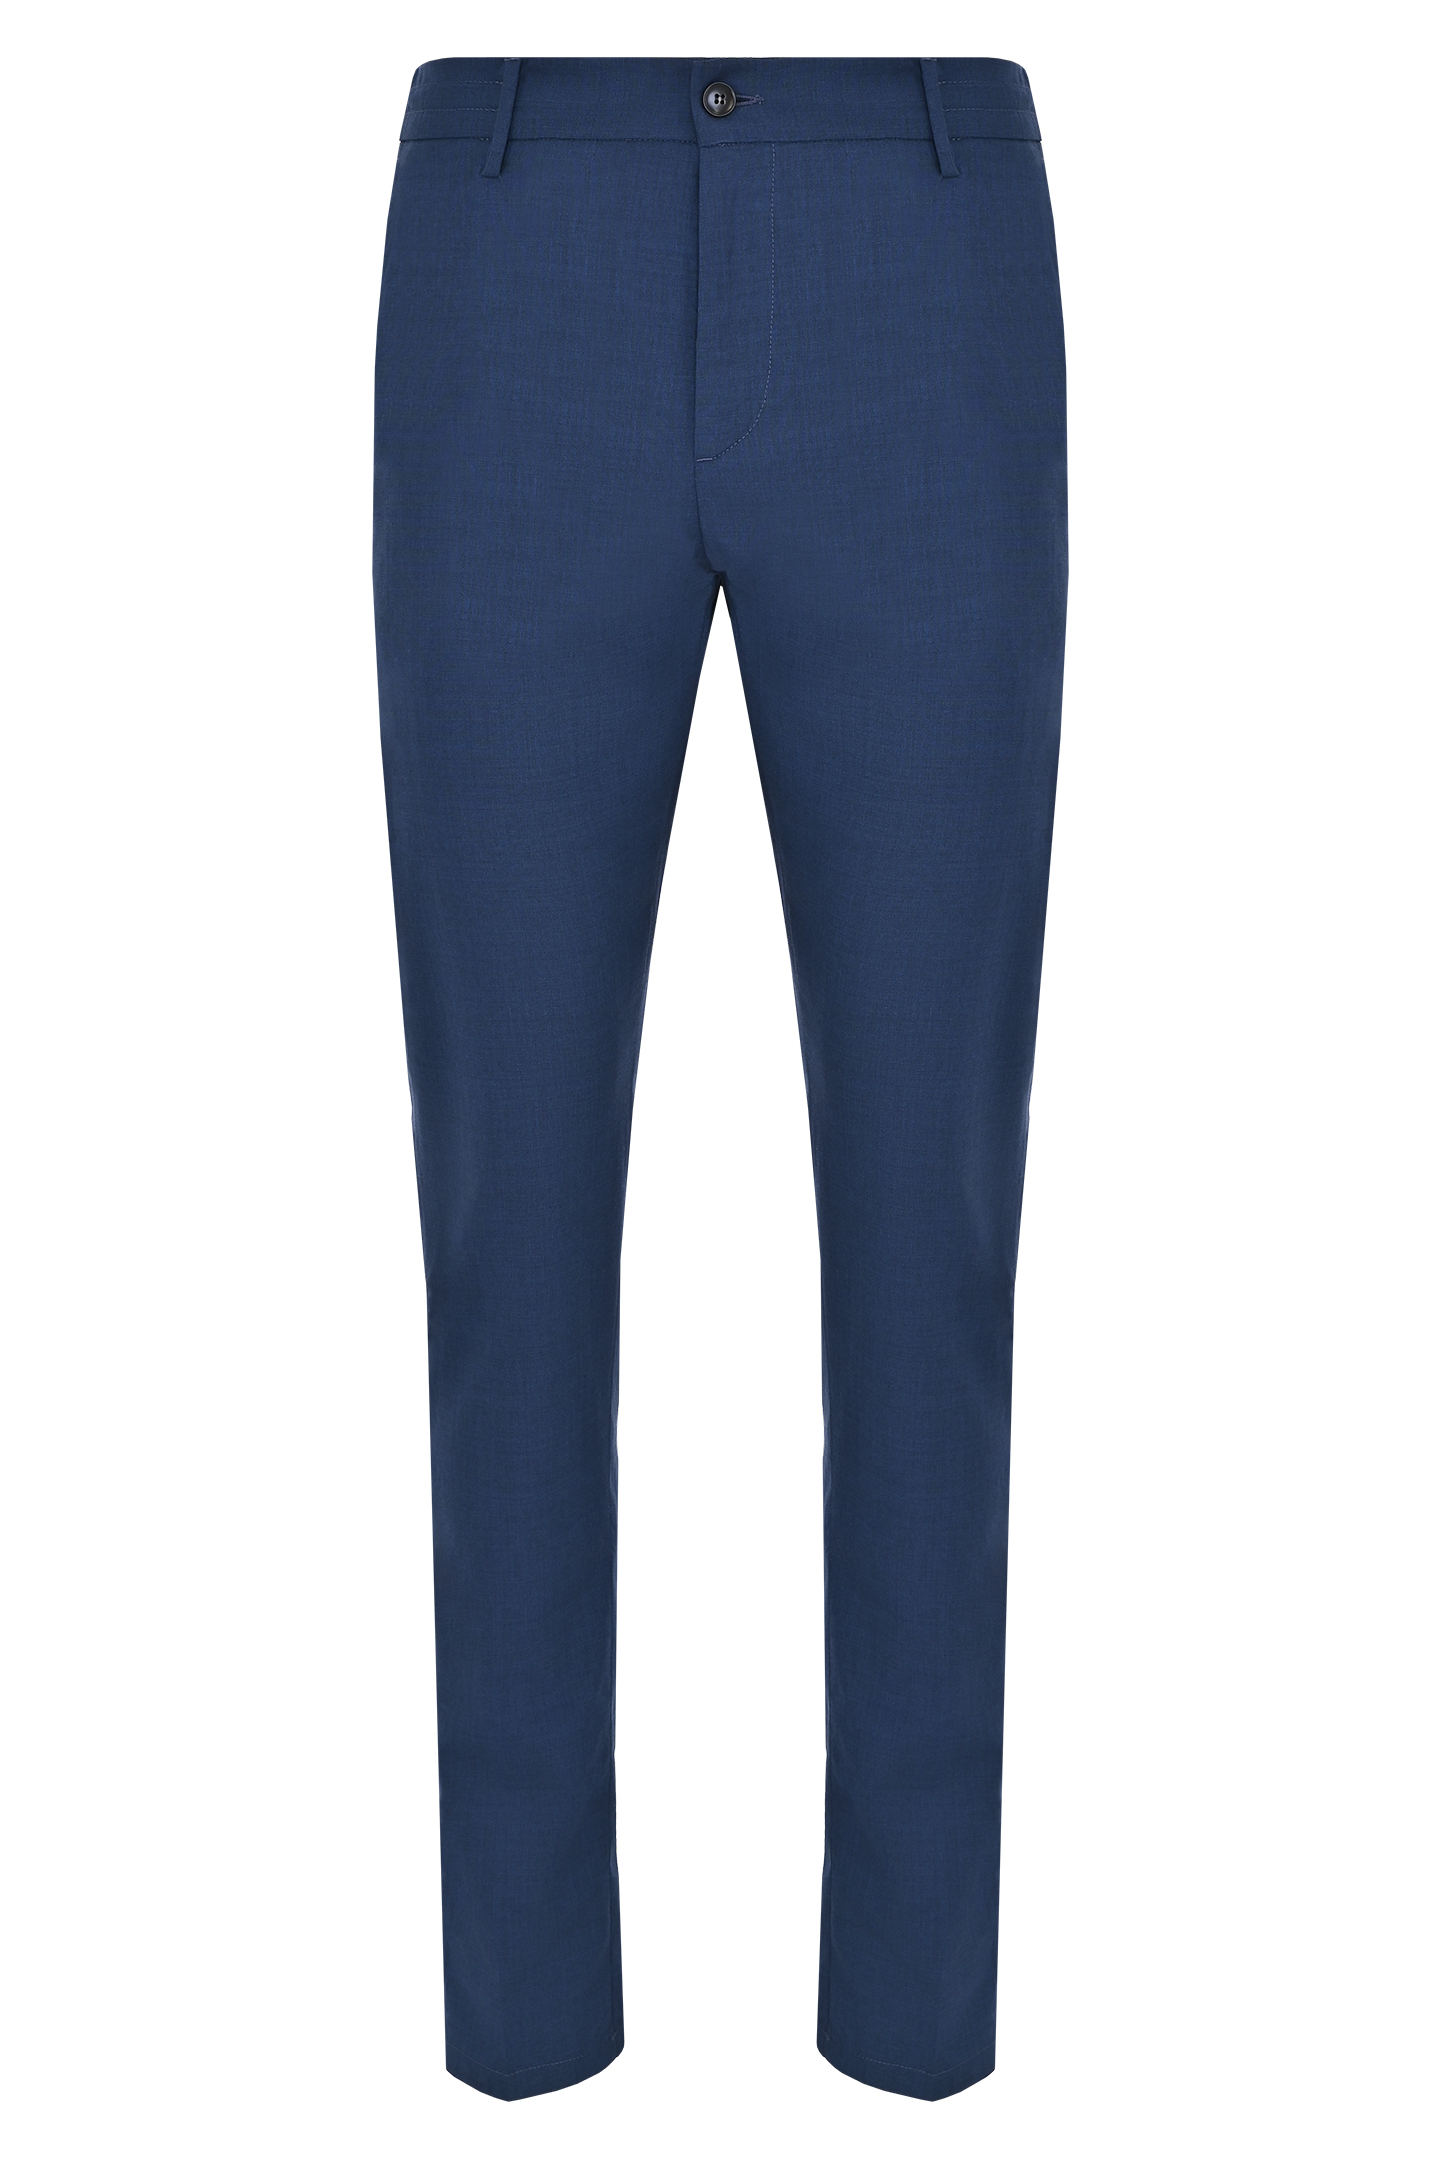 Классические шерстяные брюки CANALI PR01197 91678/1, цвет: Синий, Мужской